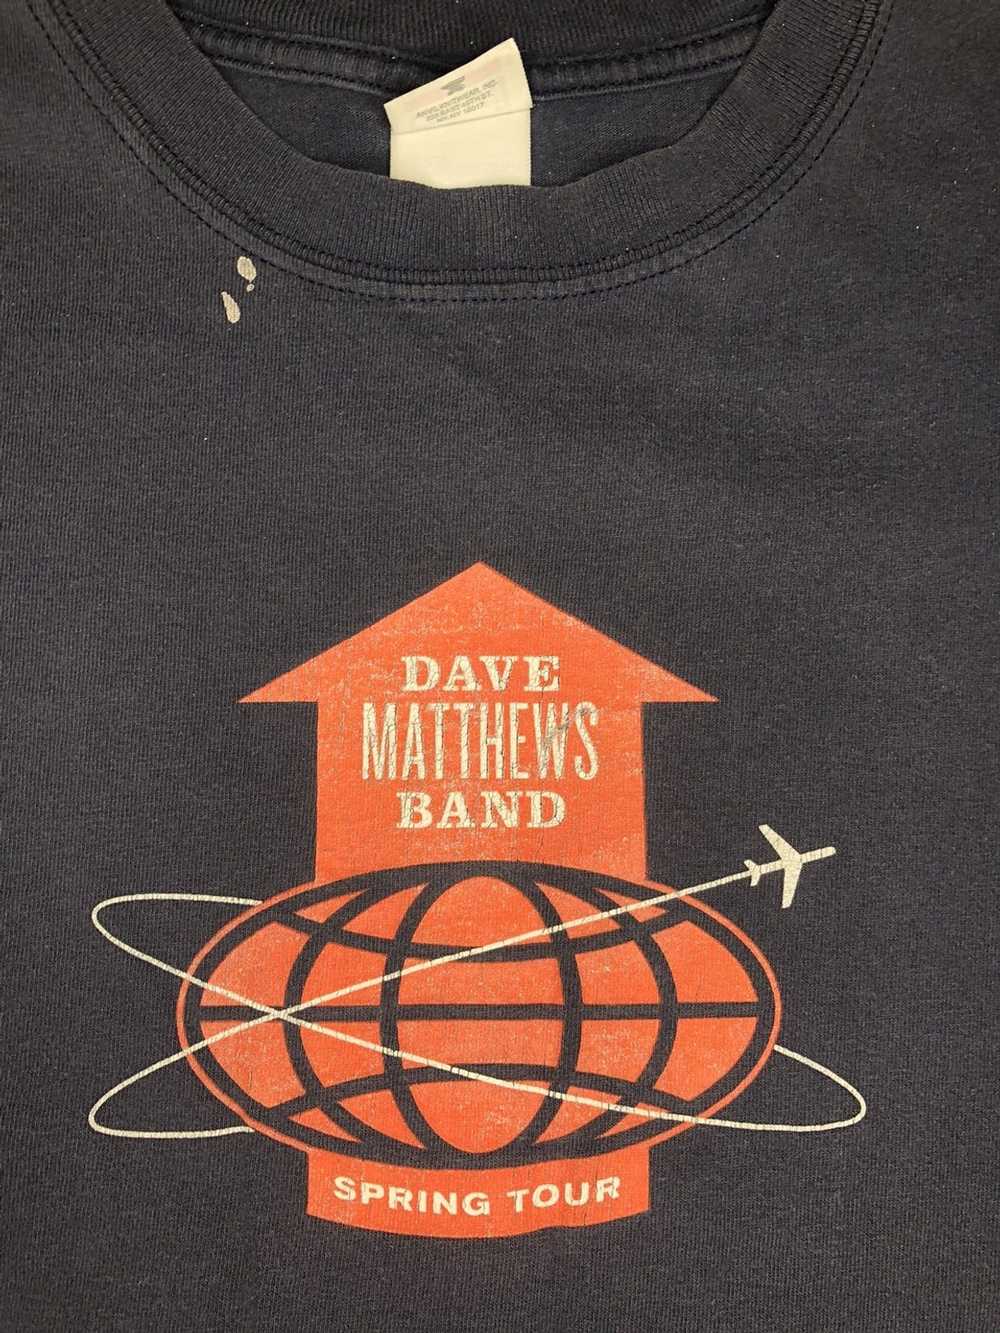 Band Tees × Gildan × Vintage 2007 Dave Matthews B… - image 3